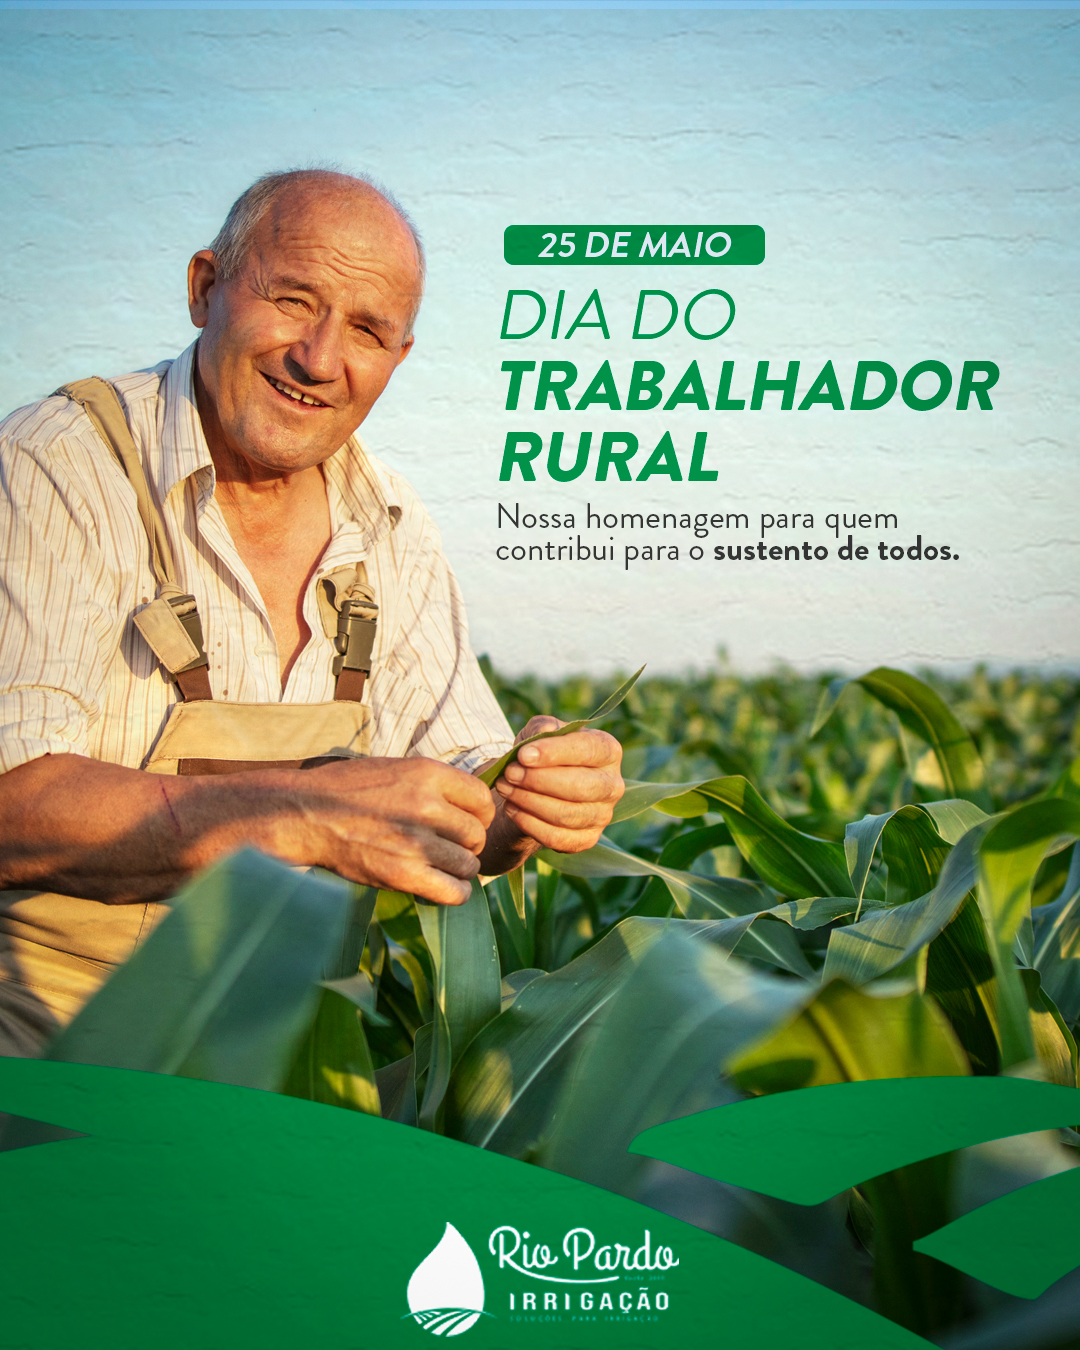 IRRIGAÇÃO RIO PARDO -Dia do trabalhador rural - 2021